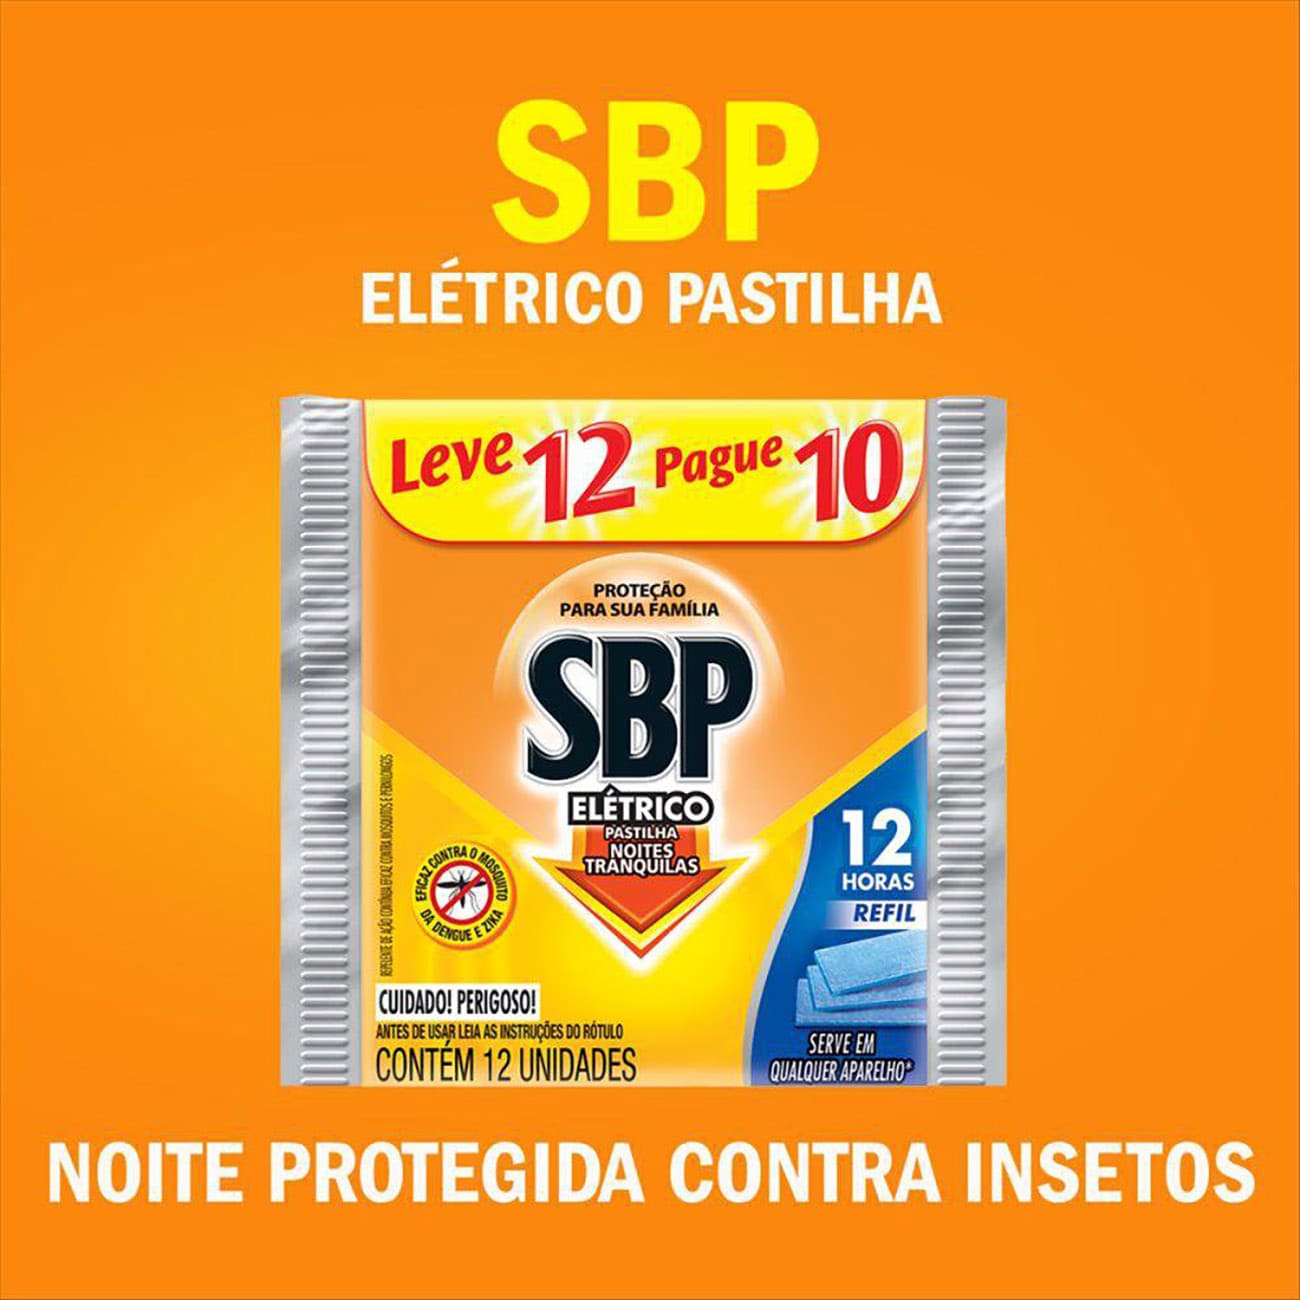 Repelente Eltrico Pastilha SBP Refil Leve 12 Pague 10 pastilhas